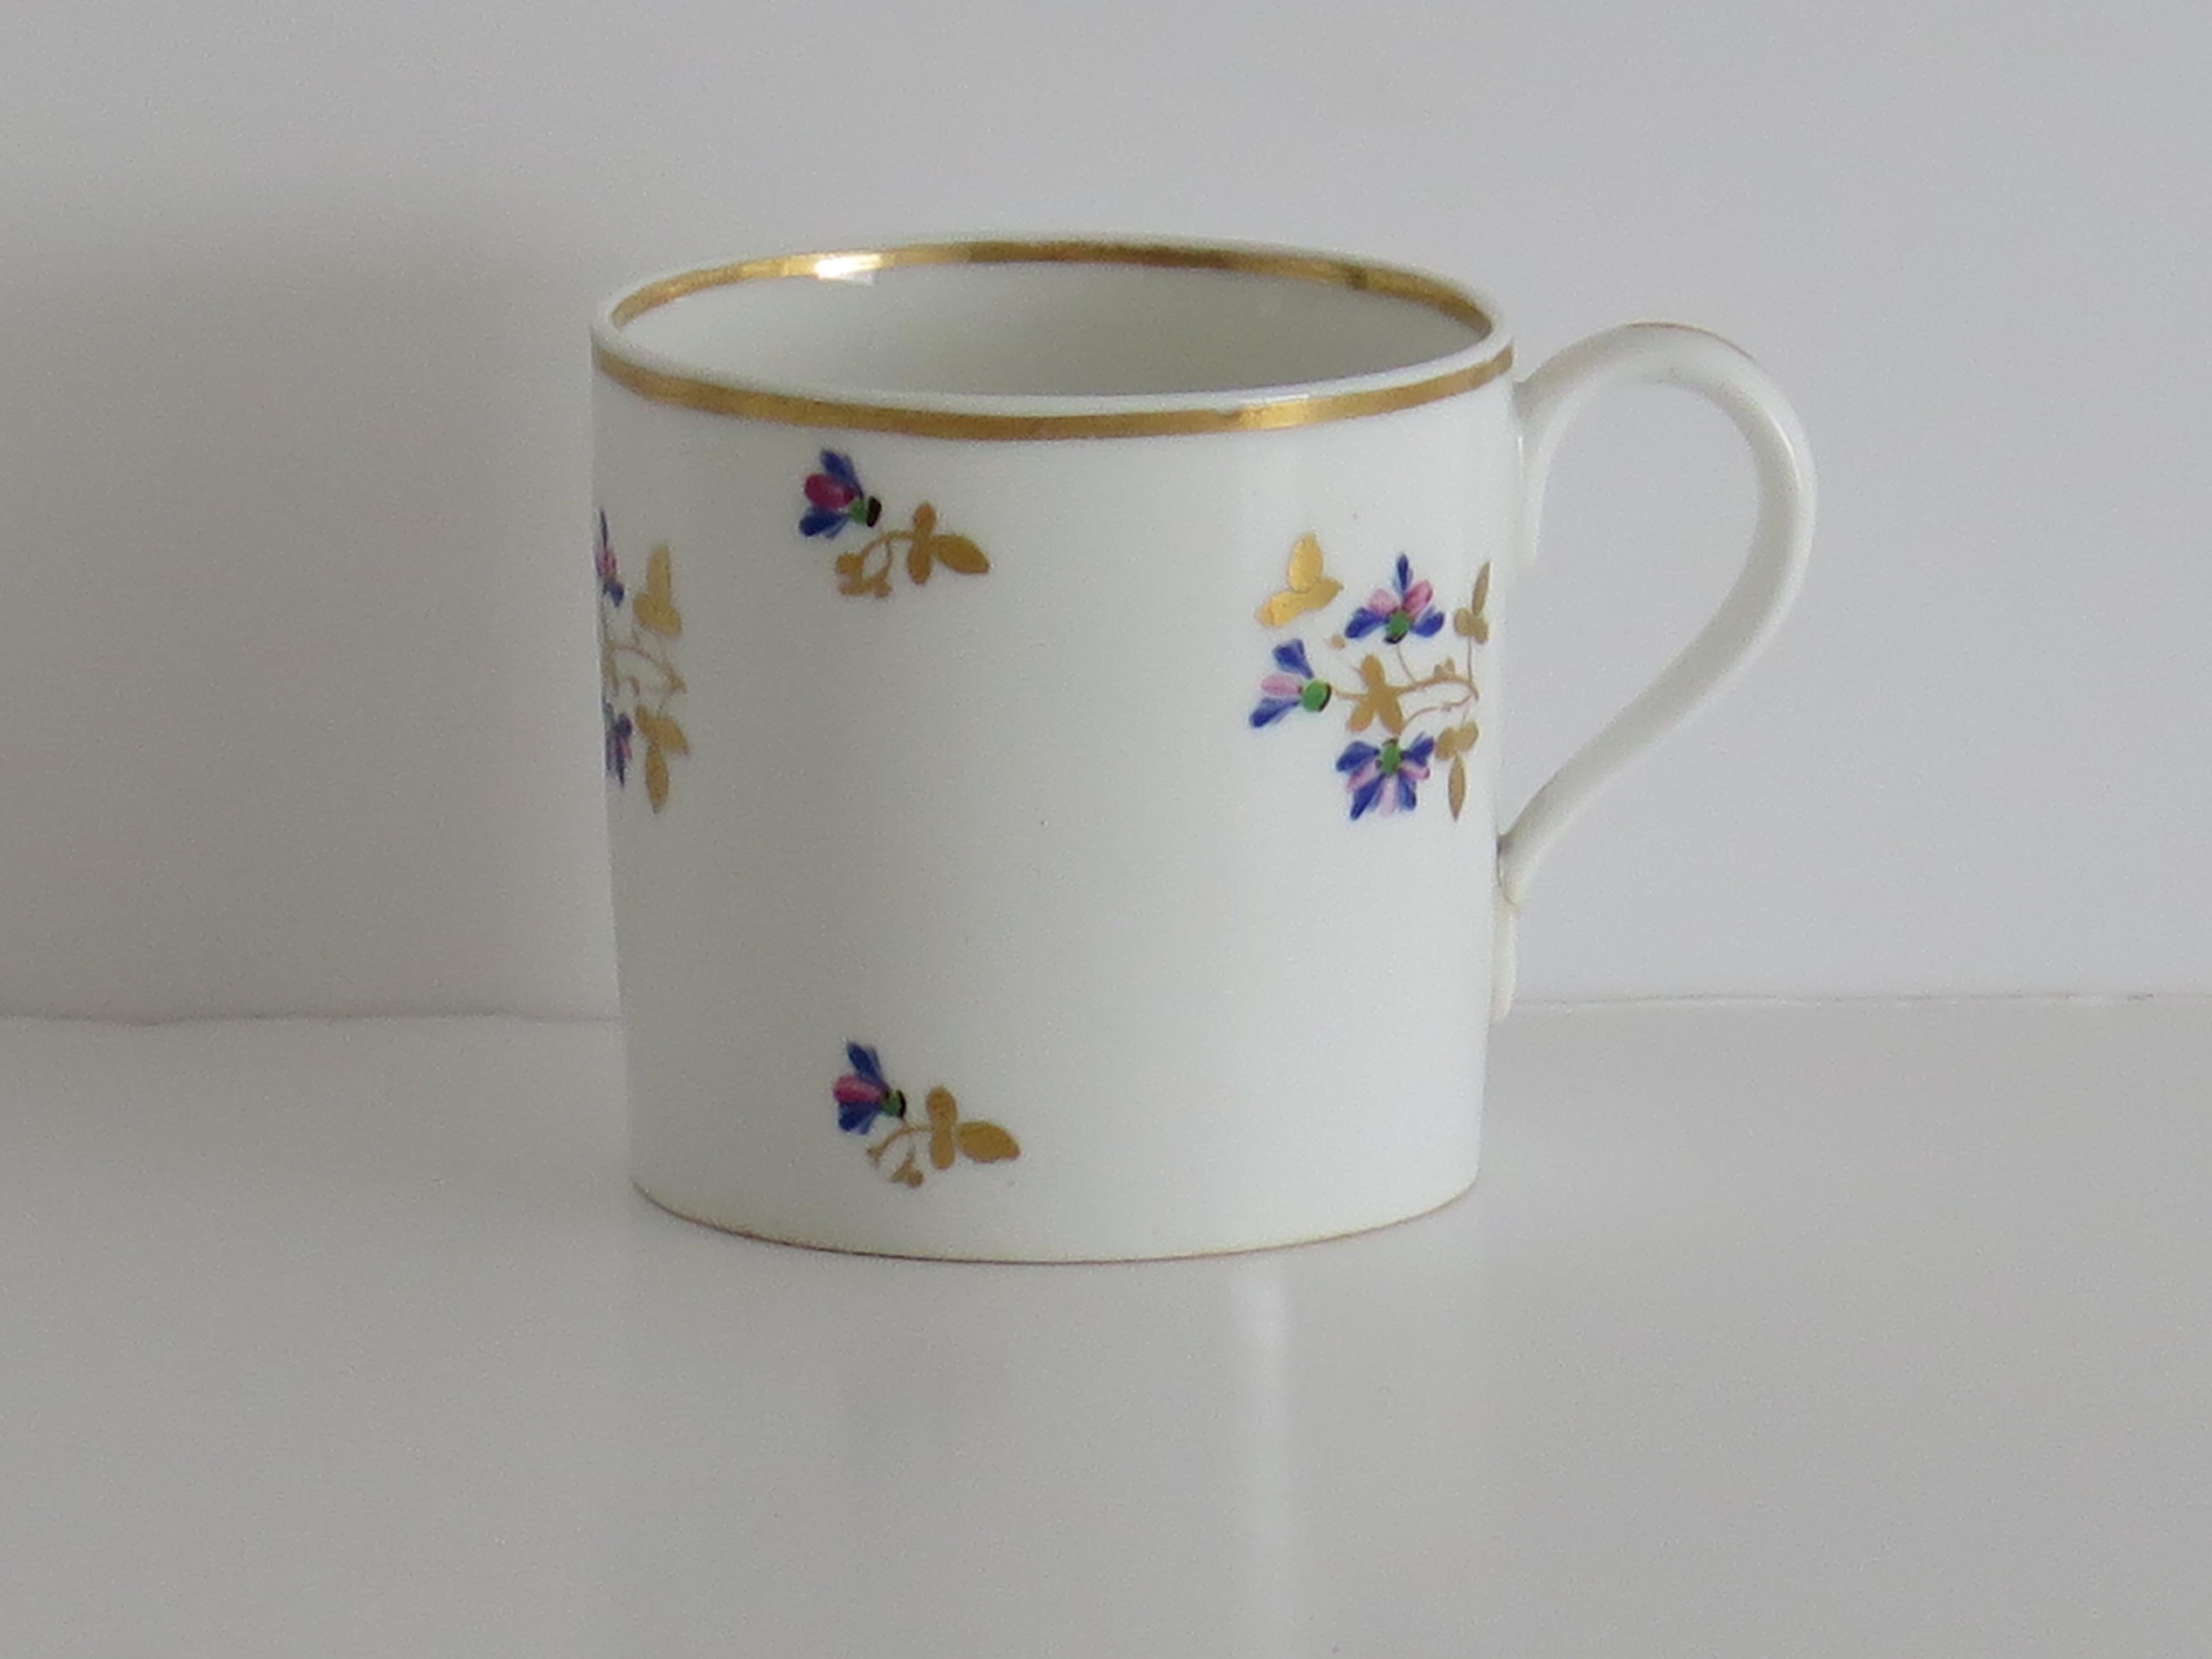 Dies ist eine gute Porzellan Kaffee Can oder Tasse Hand gemalt und vergoldet in Muster 129, von der Fabrik Derby, in der Herrschaft von George 111 im frühen 19. Jahrhundert, ca. 1810.

Er hat eine gerade Seite und einen einfachen Griff mit